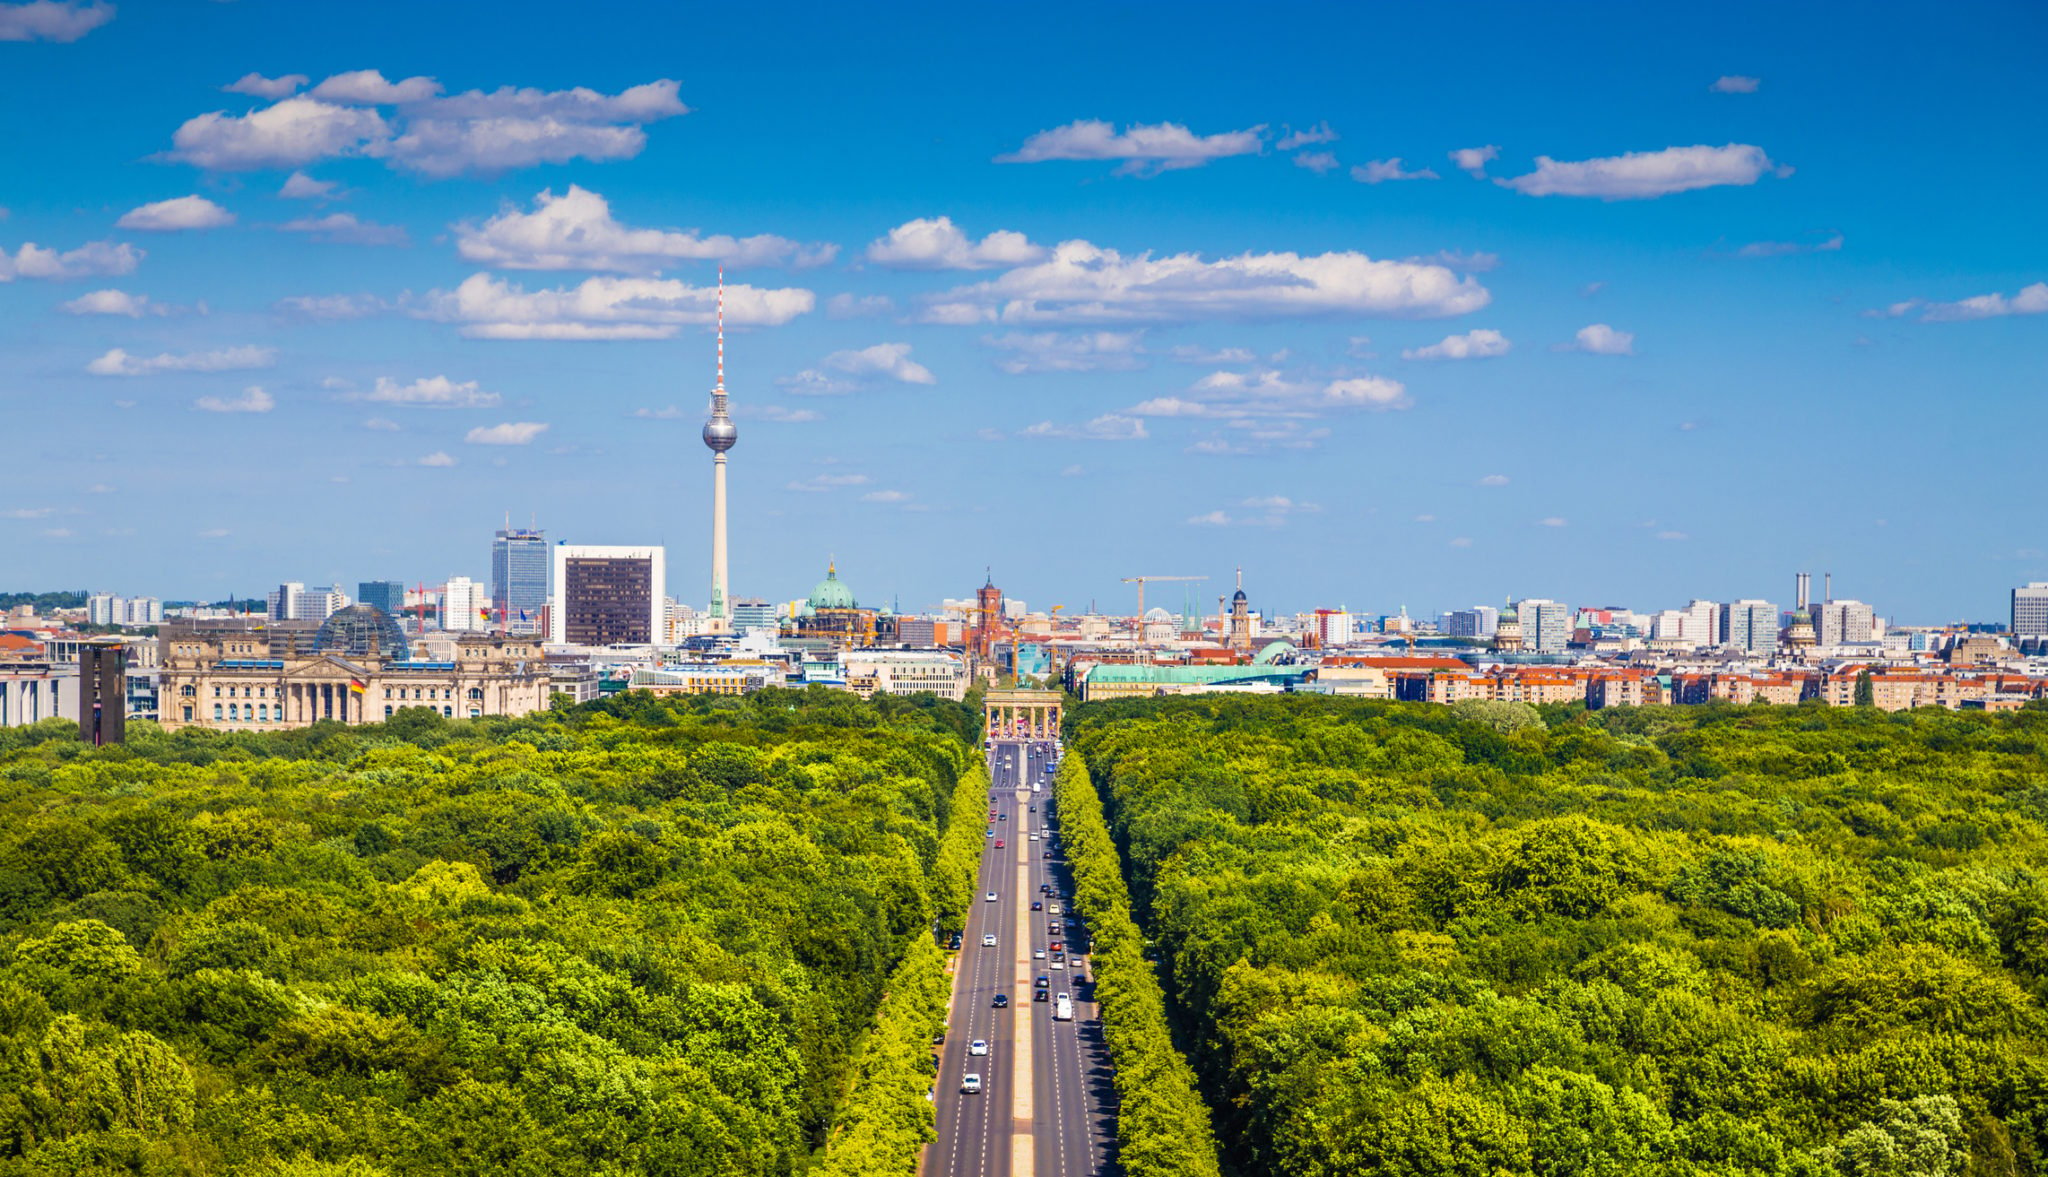 Die schönsten Gärten und Parks in Berlin